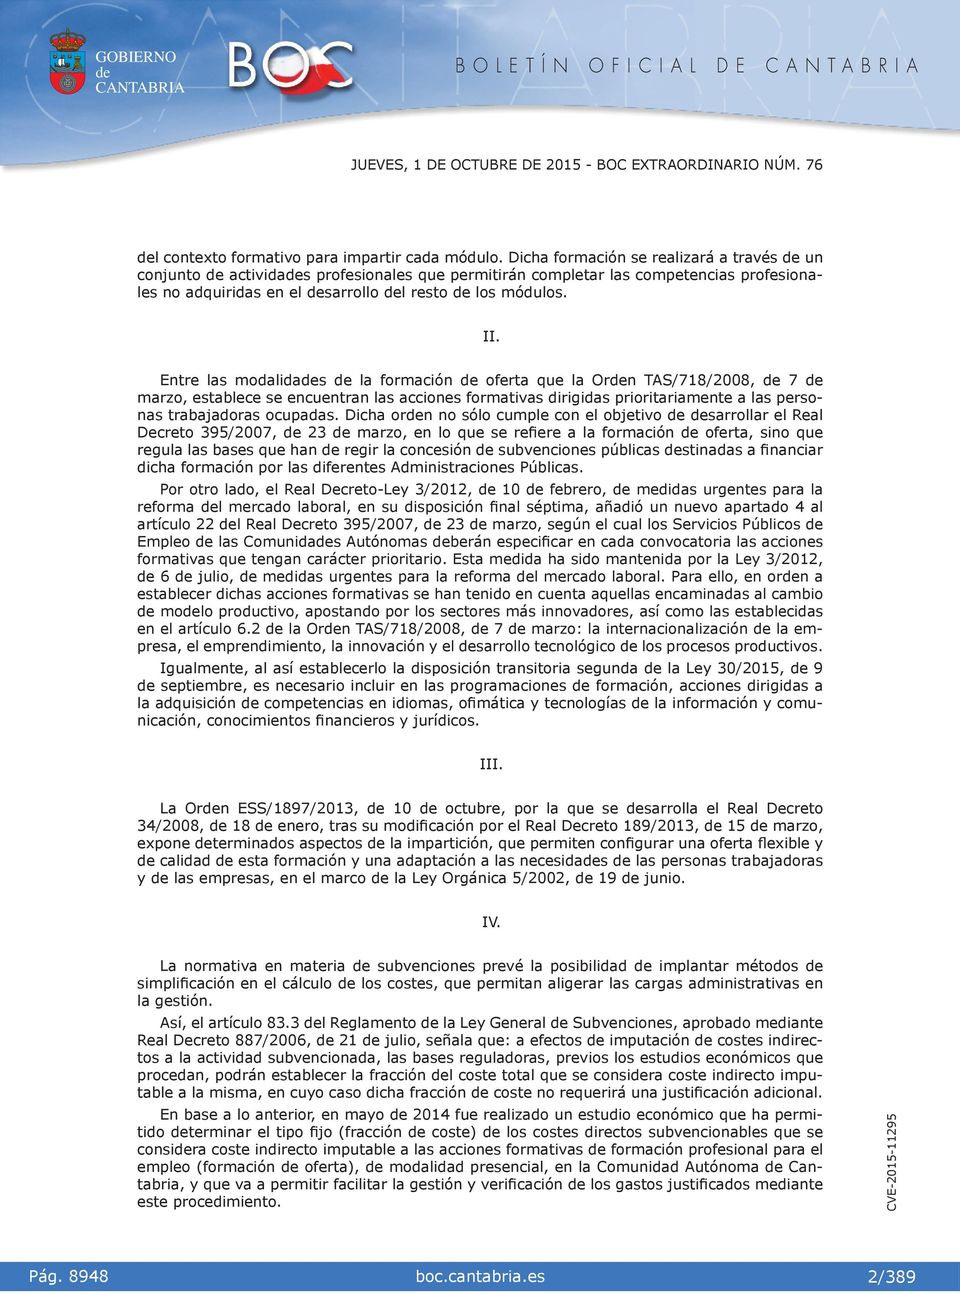 Entre las modaldas la formacón oferta que la Orn TAS/718/2008, 7 marzo, establece se encuentran las accones formatvas drgdas prortaramente a las personas trabajadoras ocupadas.